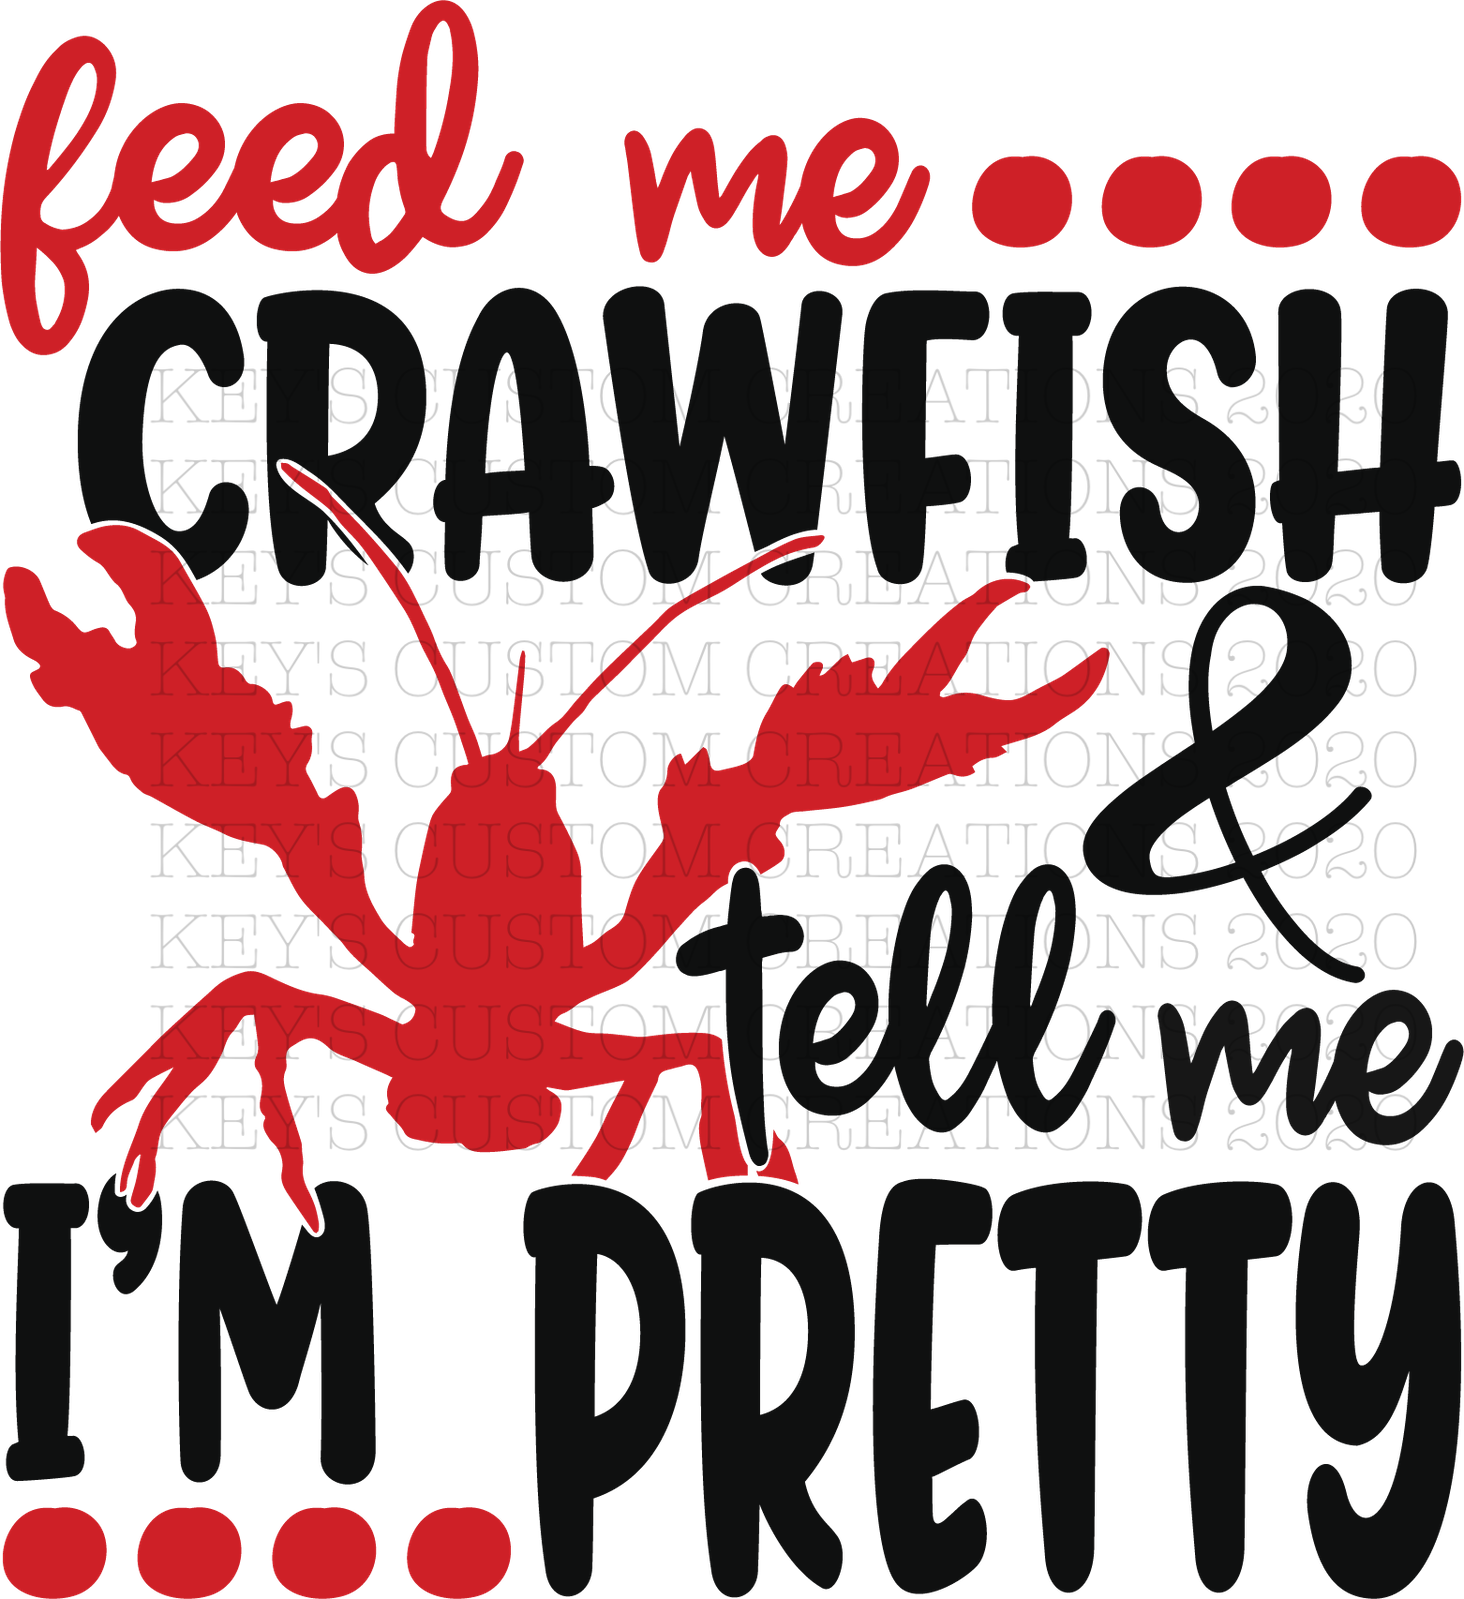 Feed Me Crawfish & Tell Me I'm Pretty